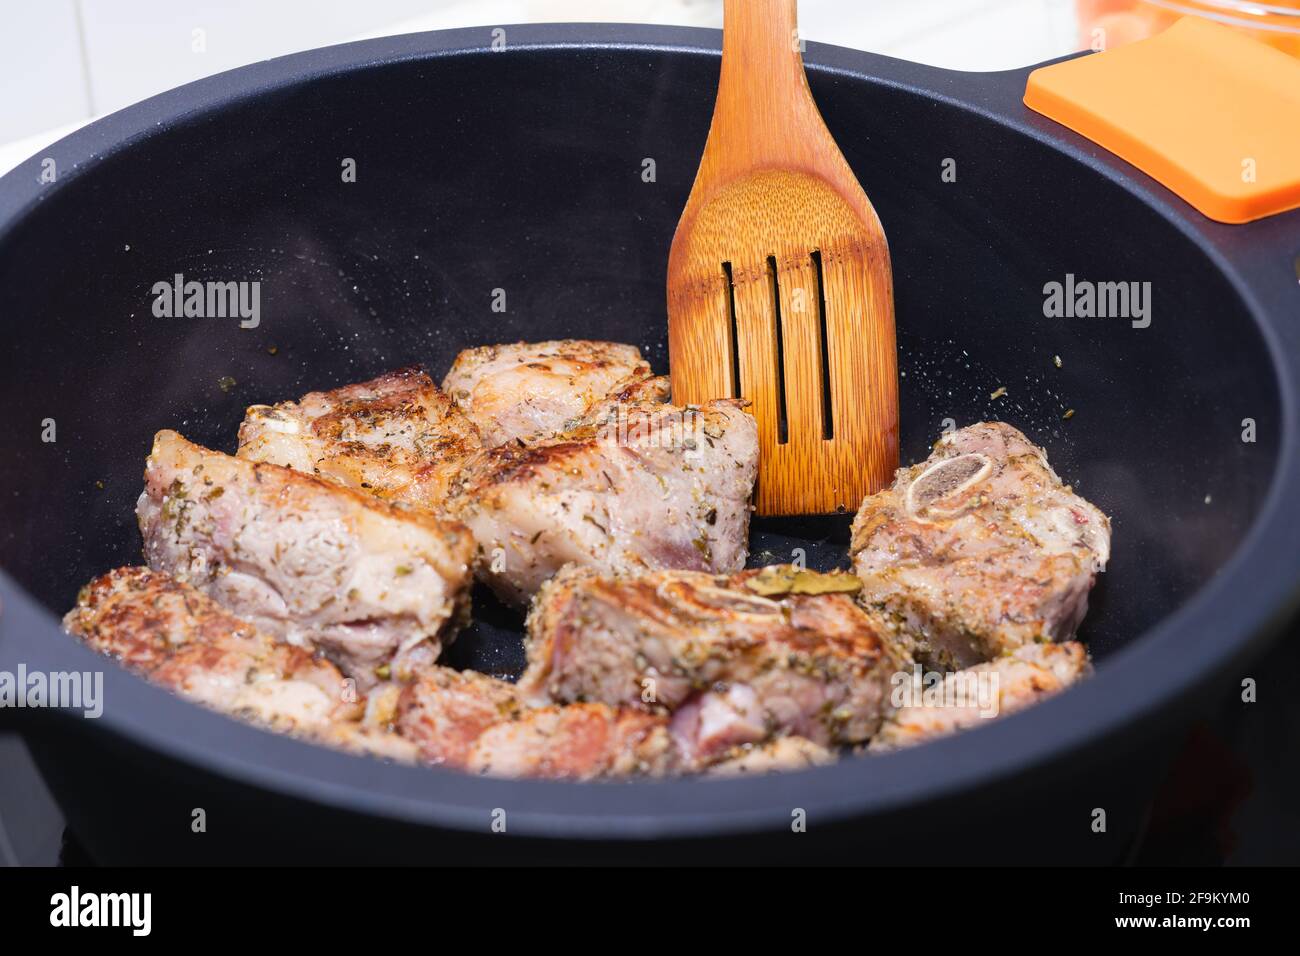 Carne cotta in un recipiente nero con utenil di legno. Concetto di cucina. Foto Stock